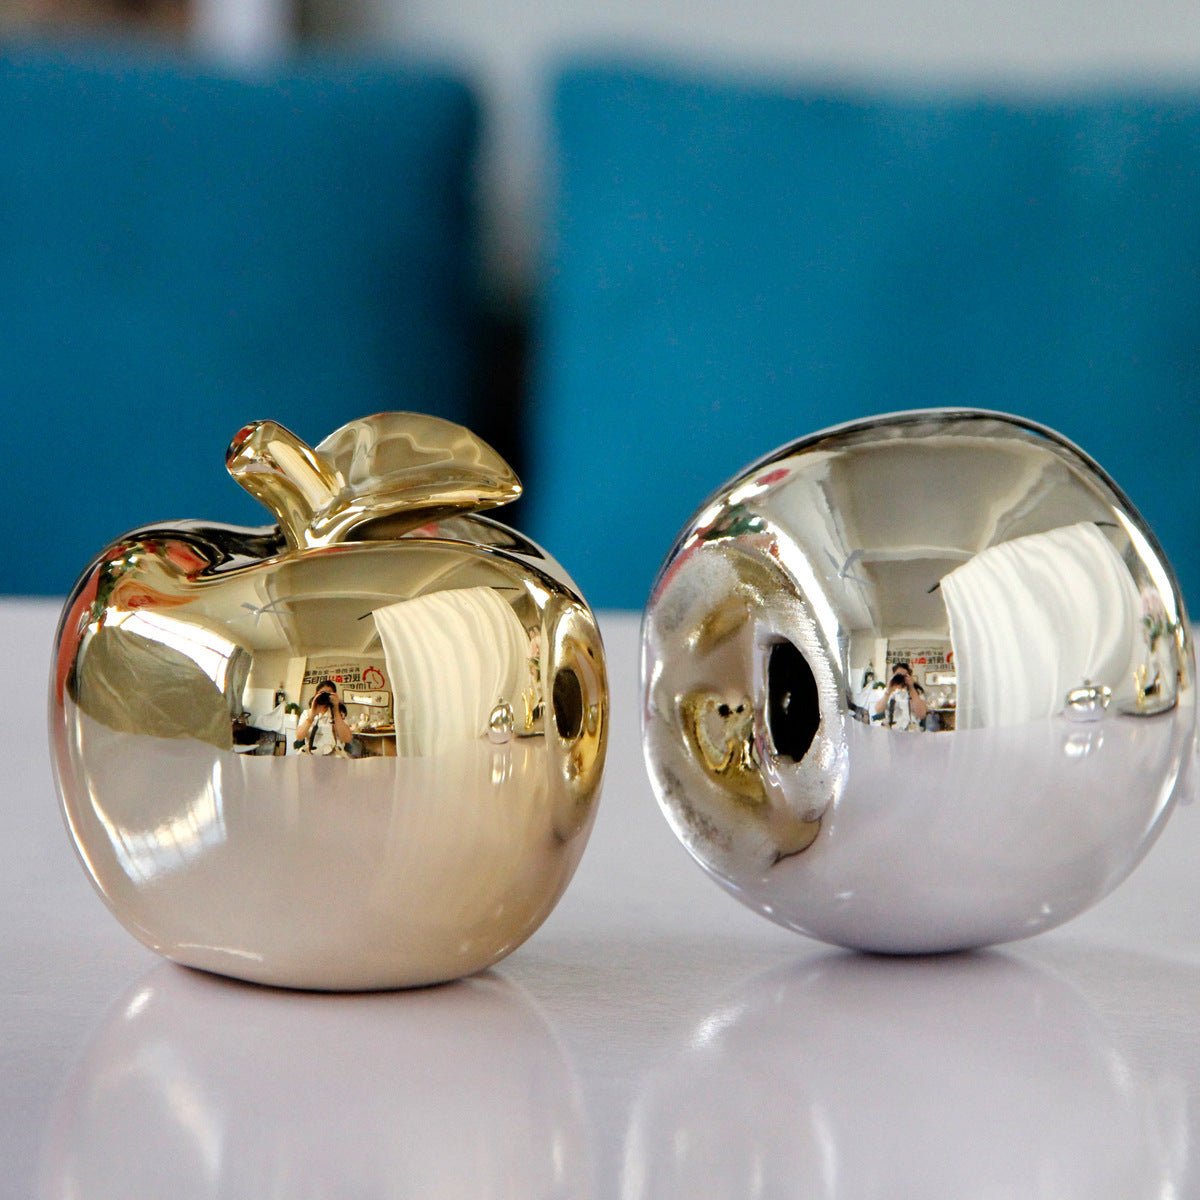 Golden Silver Apple Ceramic Ornaments - Max&Mark Home Decor